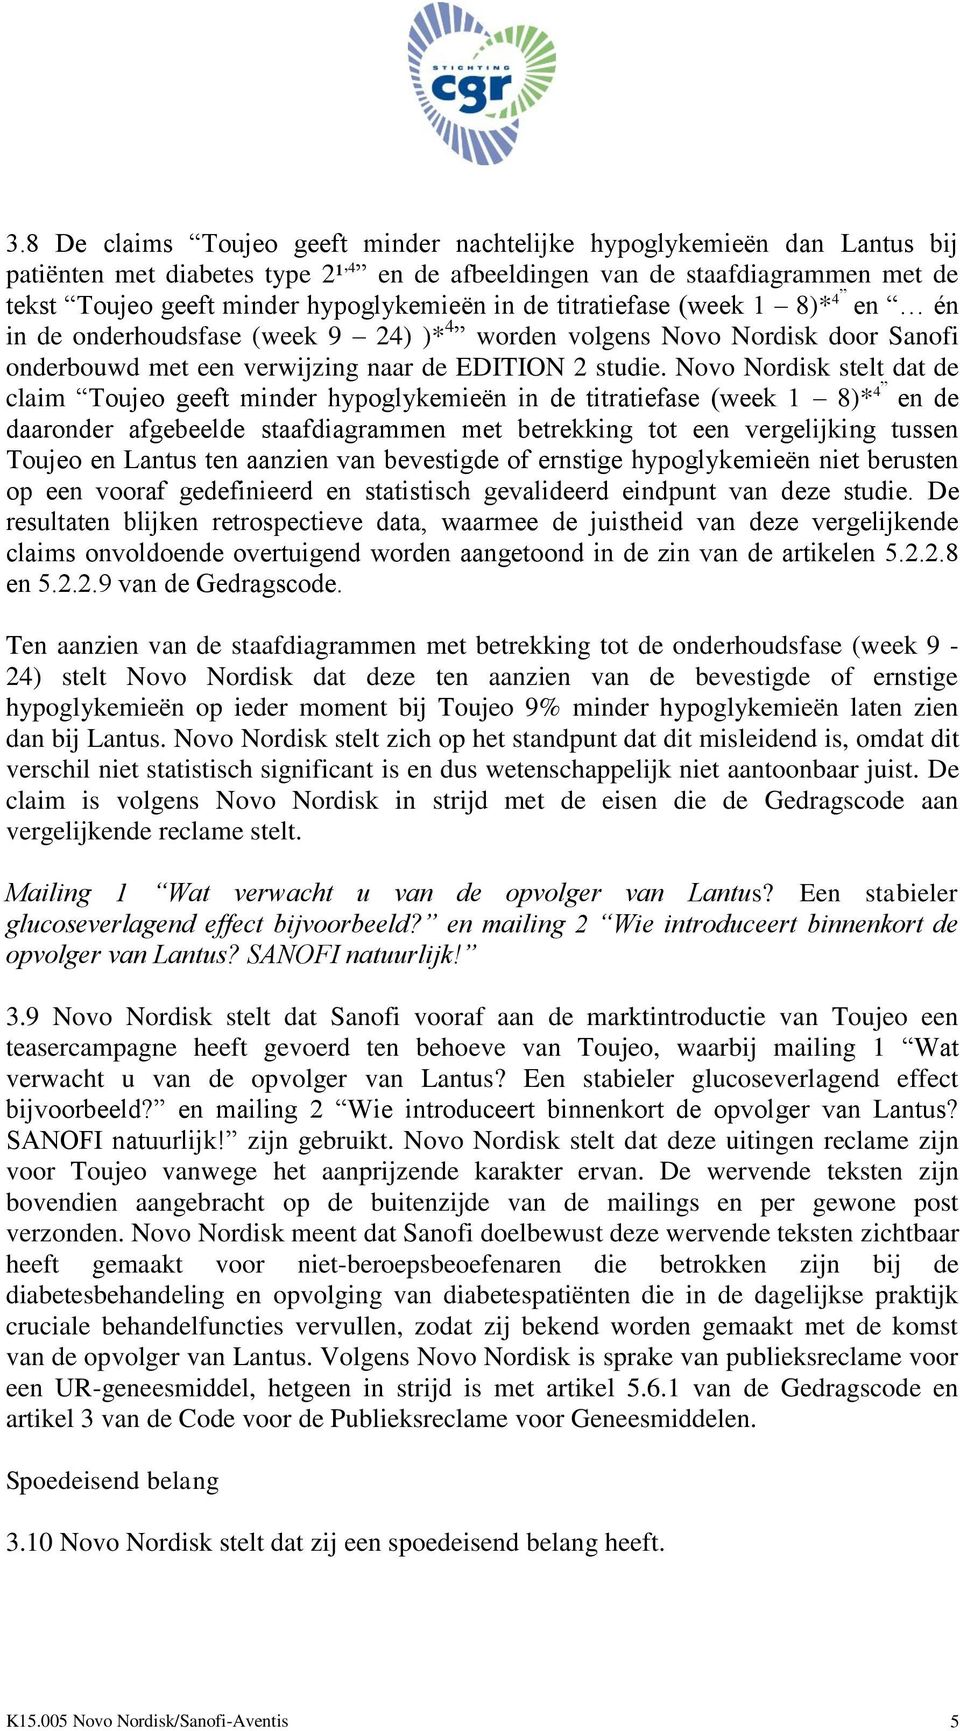 Novo Nordisk stelt dat de claim Toujeo geeft minder hypoglykemieën in de titratiefase (week 1 8)* 4 en de daaronder afgebeelde staafdiagrammen met betrekking tot een vergelijking tussen Toujeo en